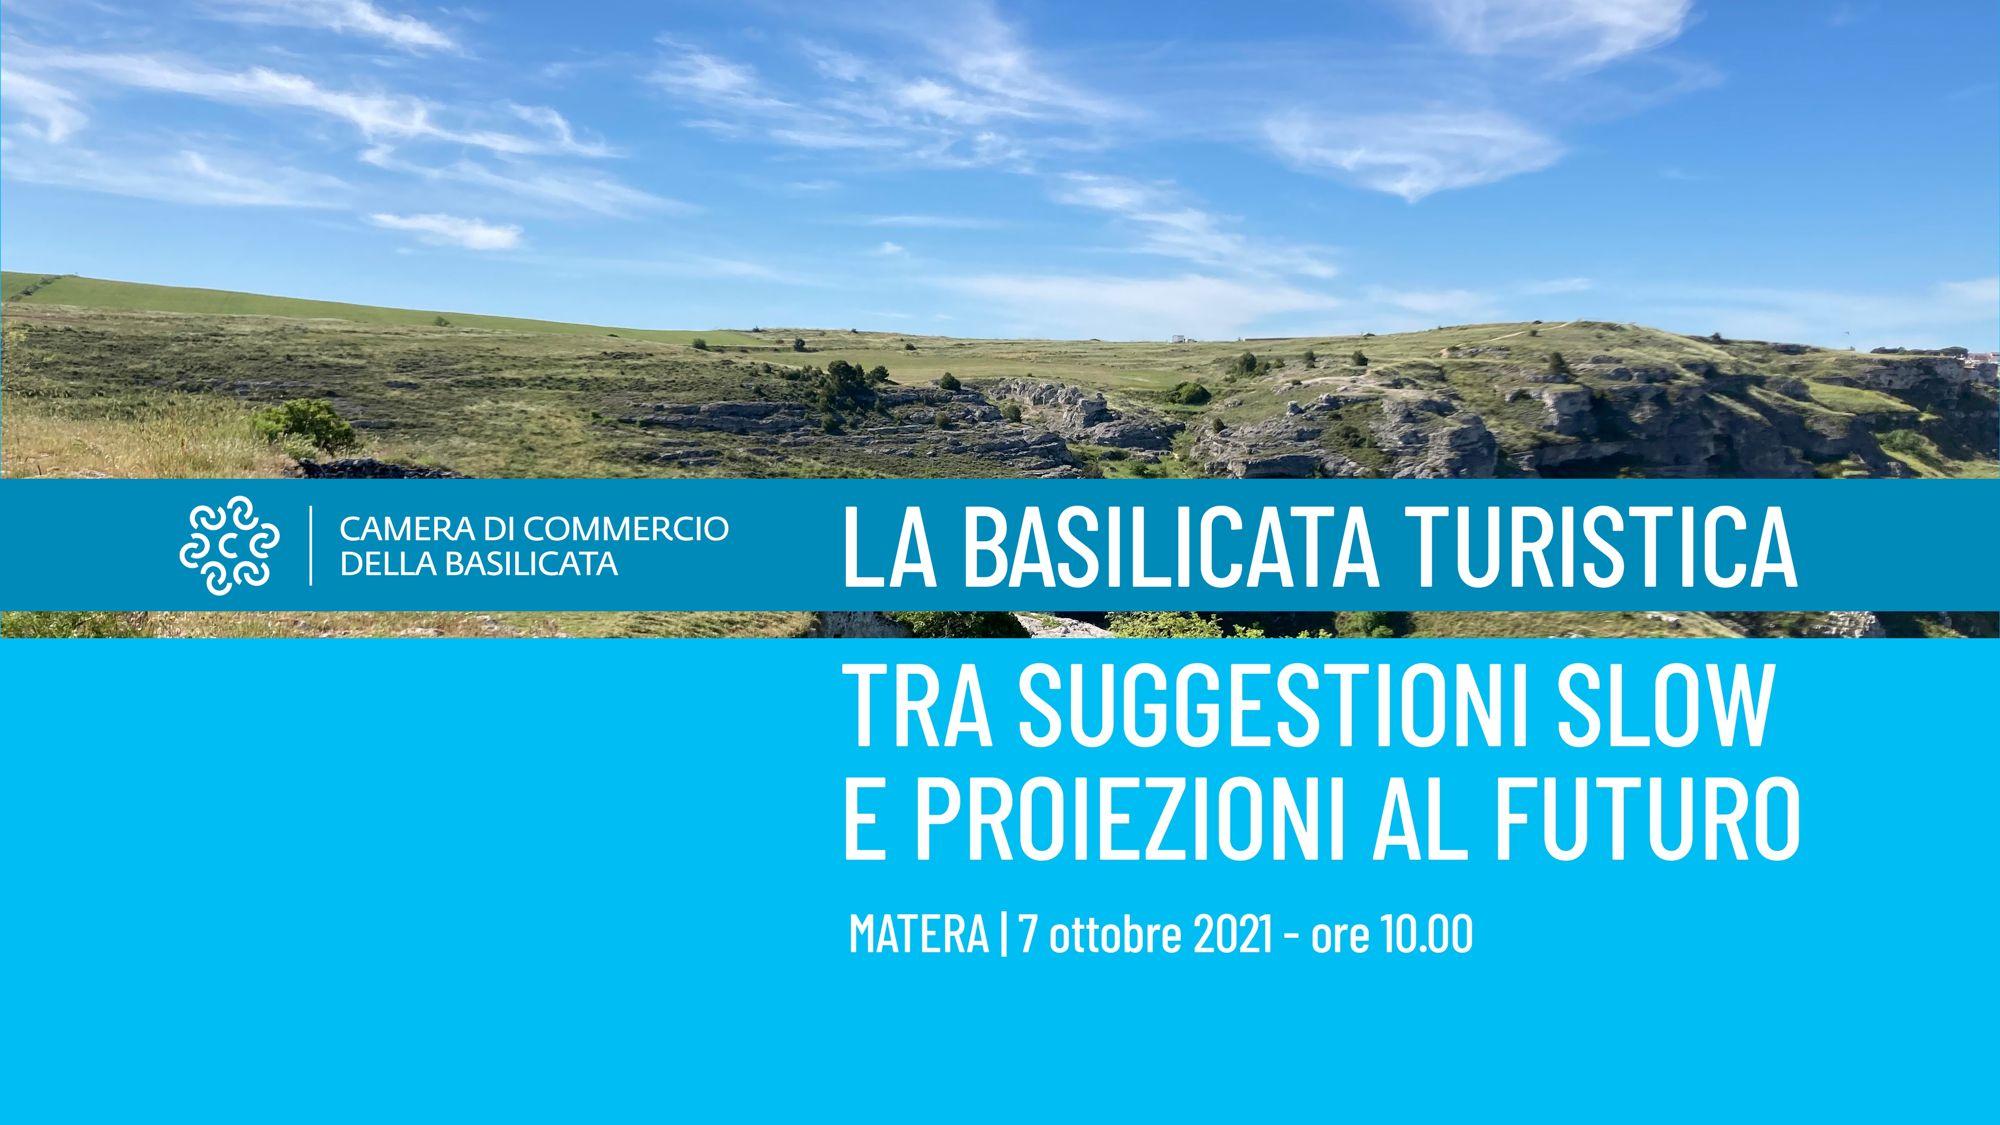 La Basilicata turistica tra suggestioni slow e proiezioni al futuro